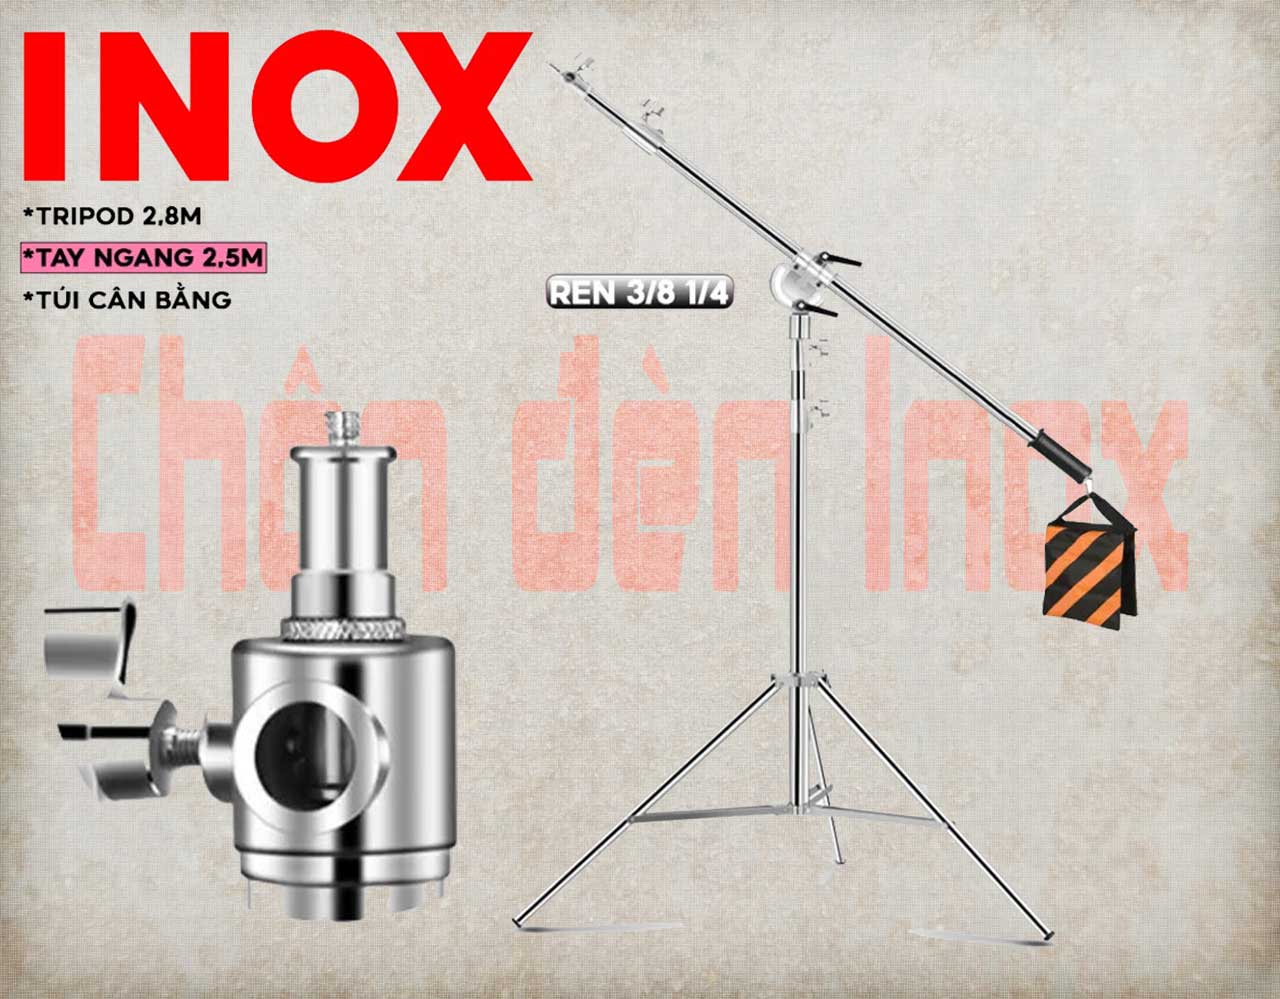 Bộ chân đèn Inox kèm tay ngang ARM 2.5m kèm túi cân bằng